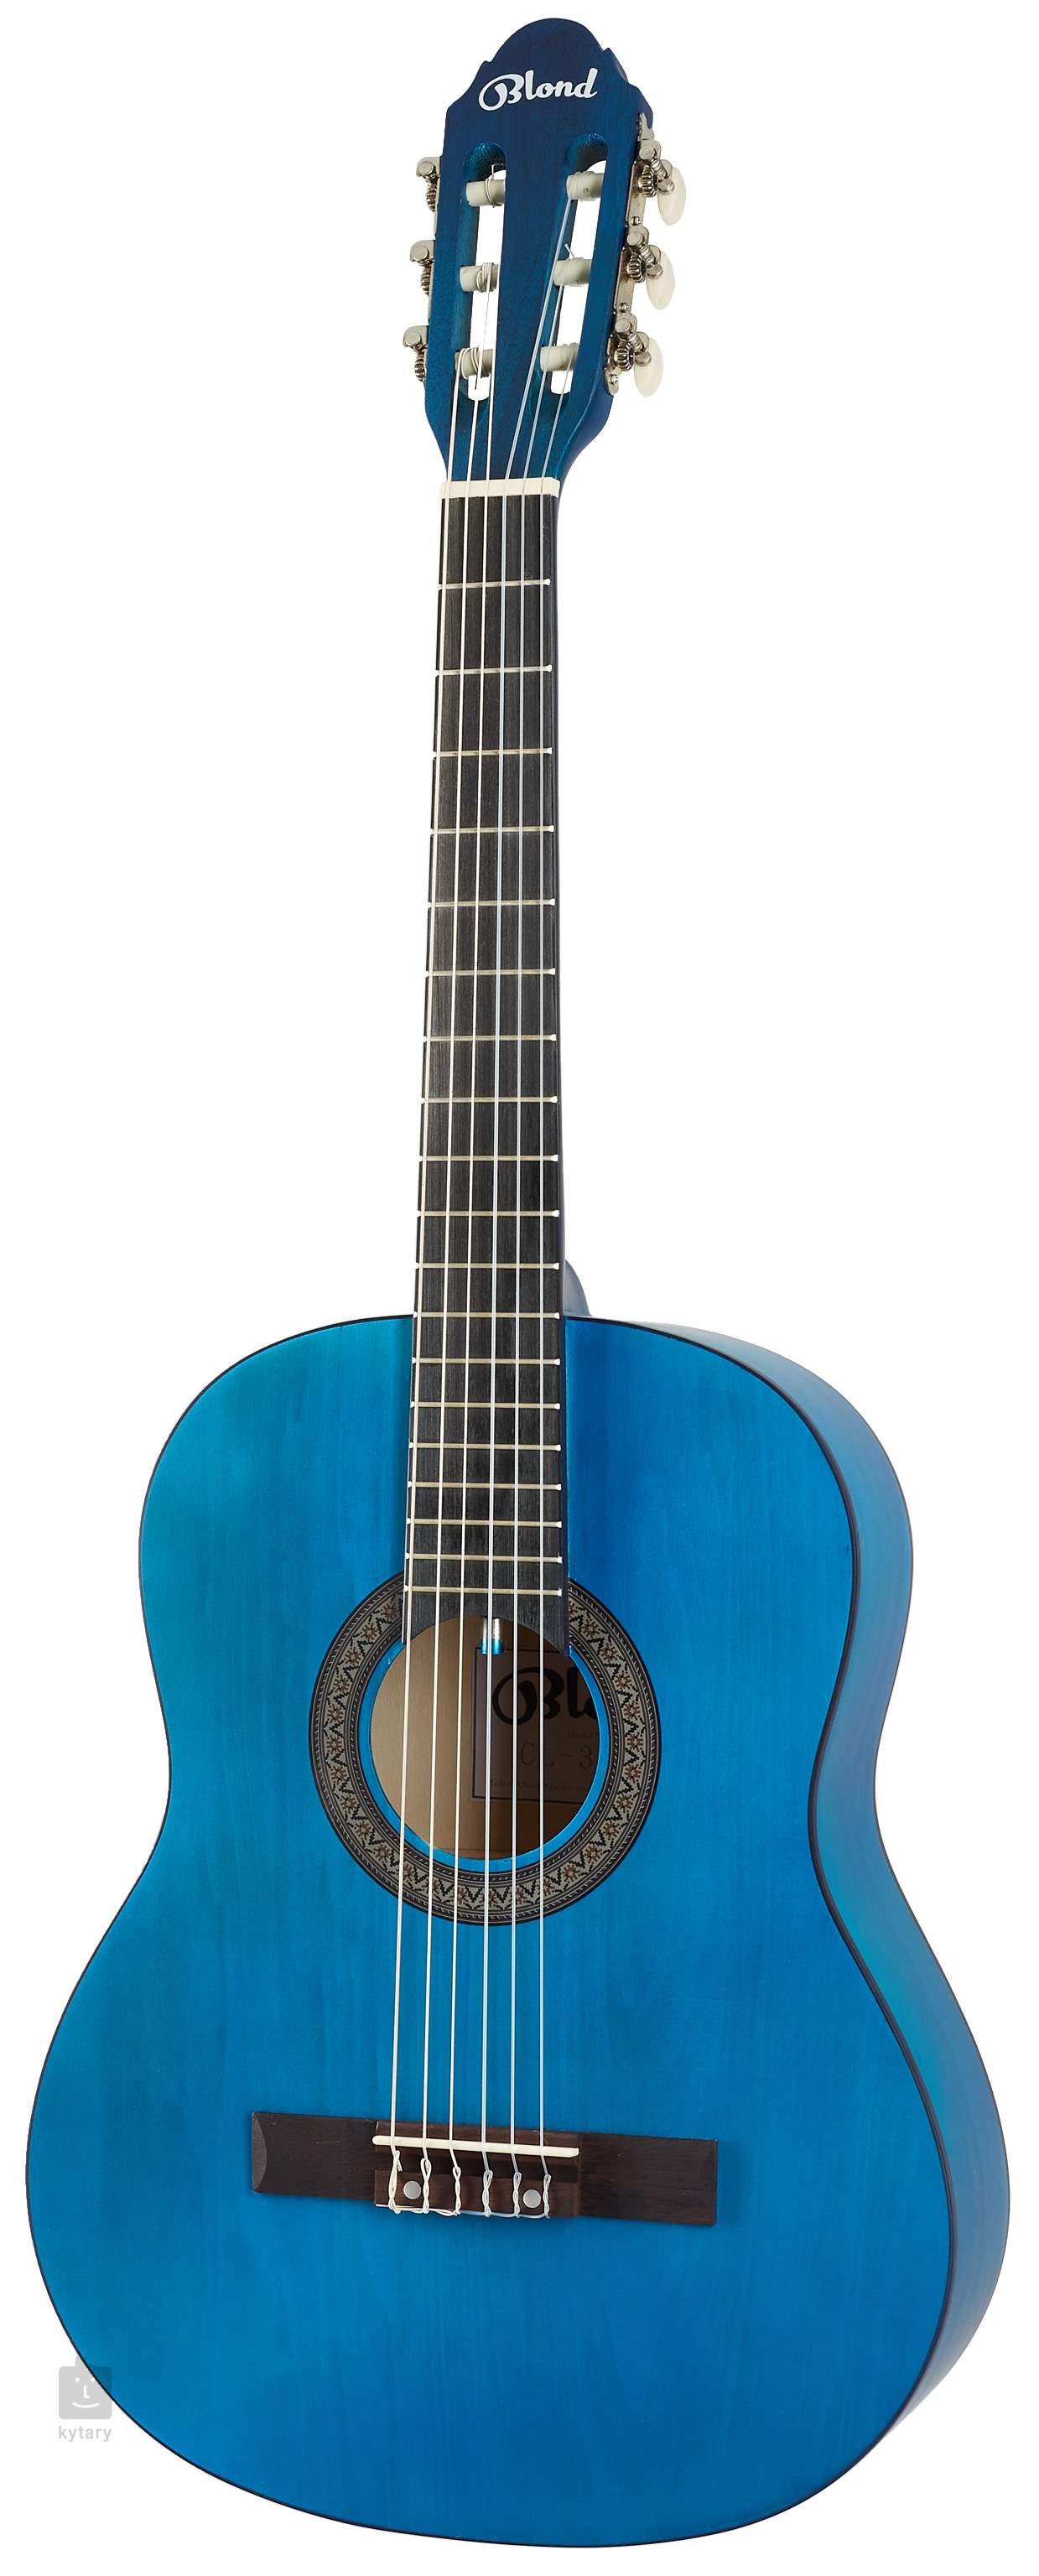 Guitare enfant folk 1 2 bleu - guitare acoustique enfant